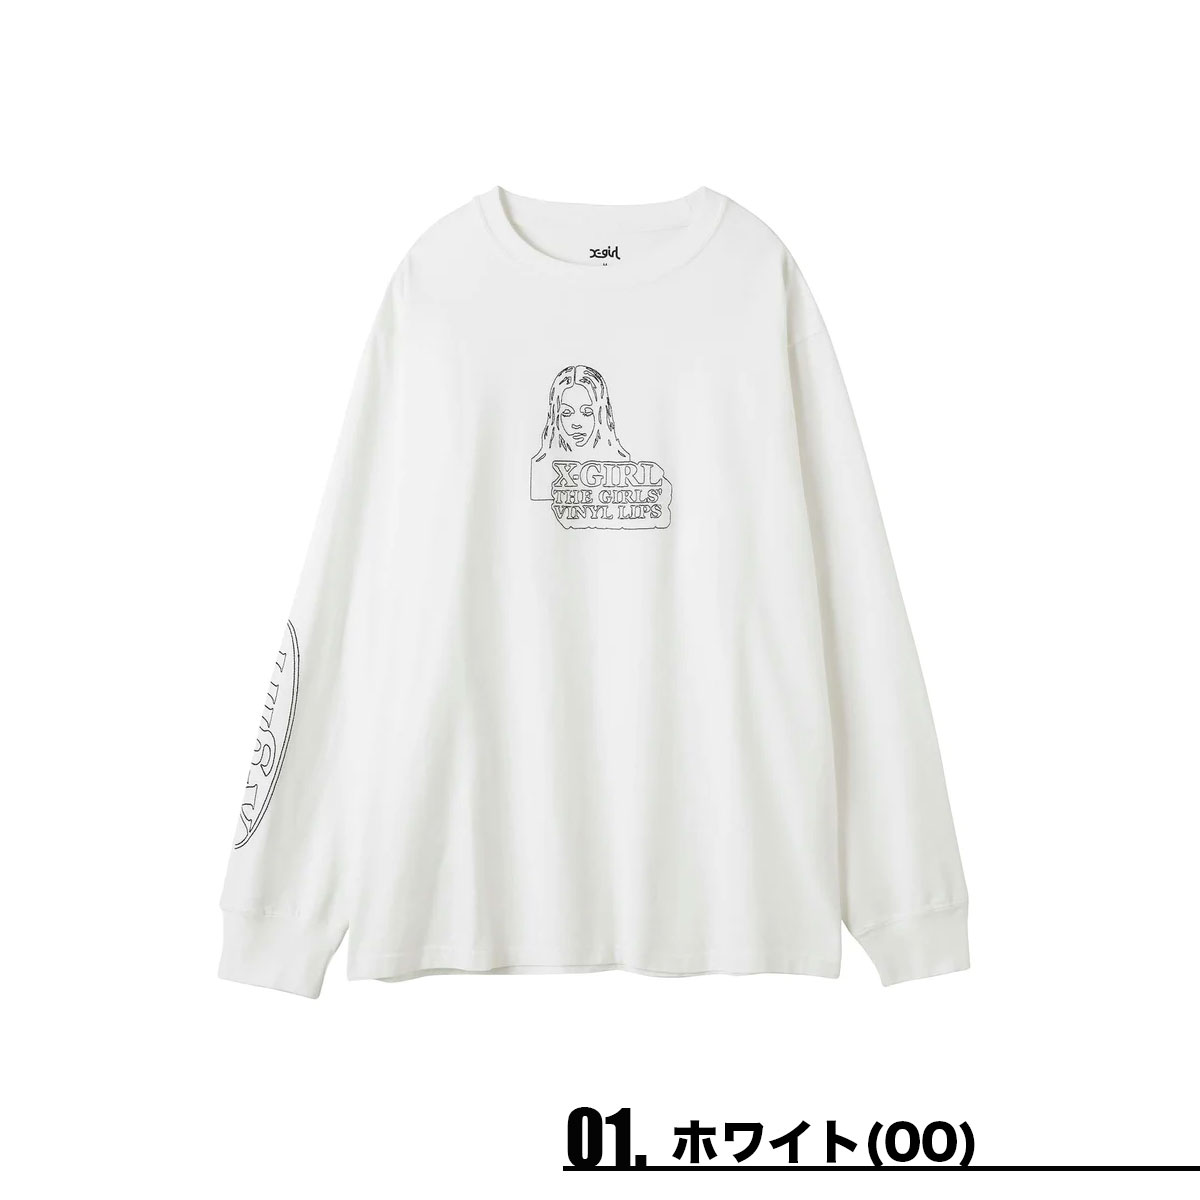 エックスガール Tシャツ ロンT レディース 刺繍 FACE & LOGO STITCH L